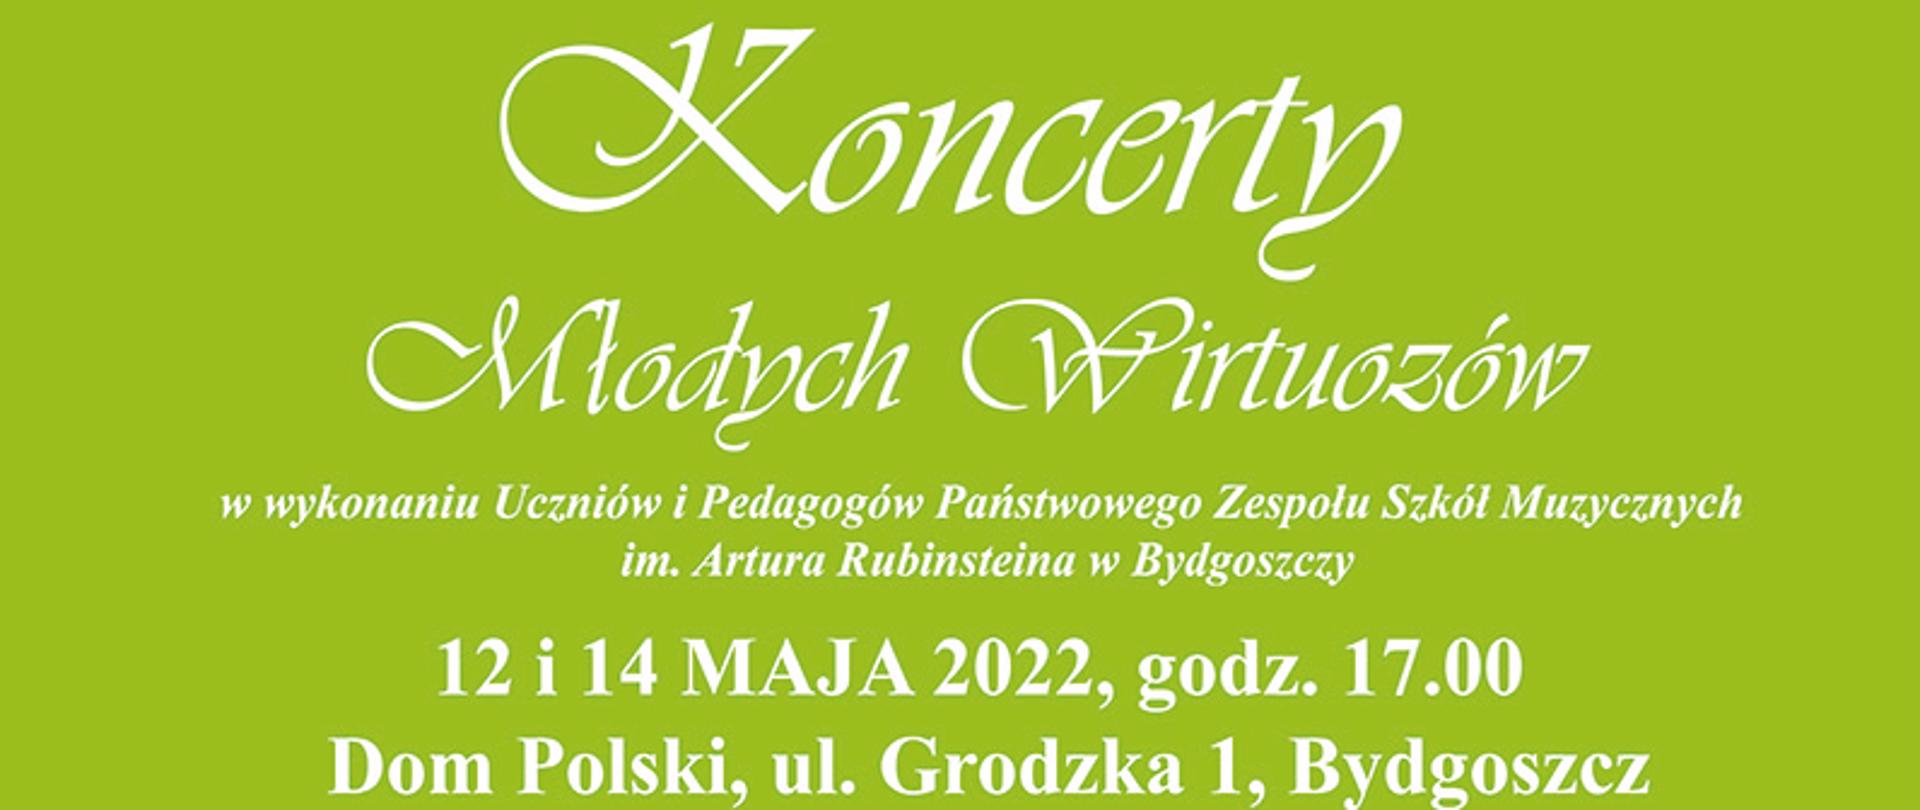 Plakat informacyjny o koncertach uczniów i pedagogów